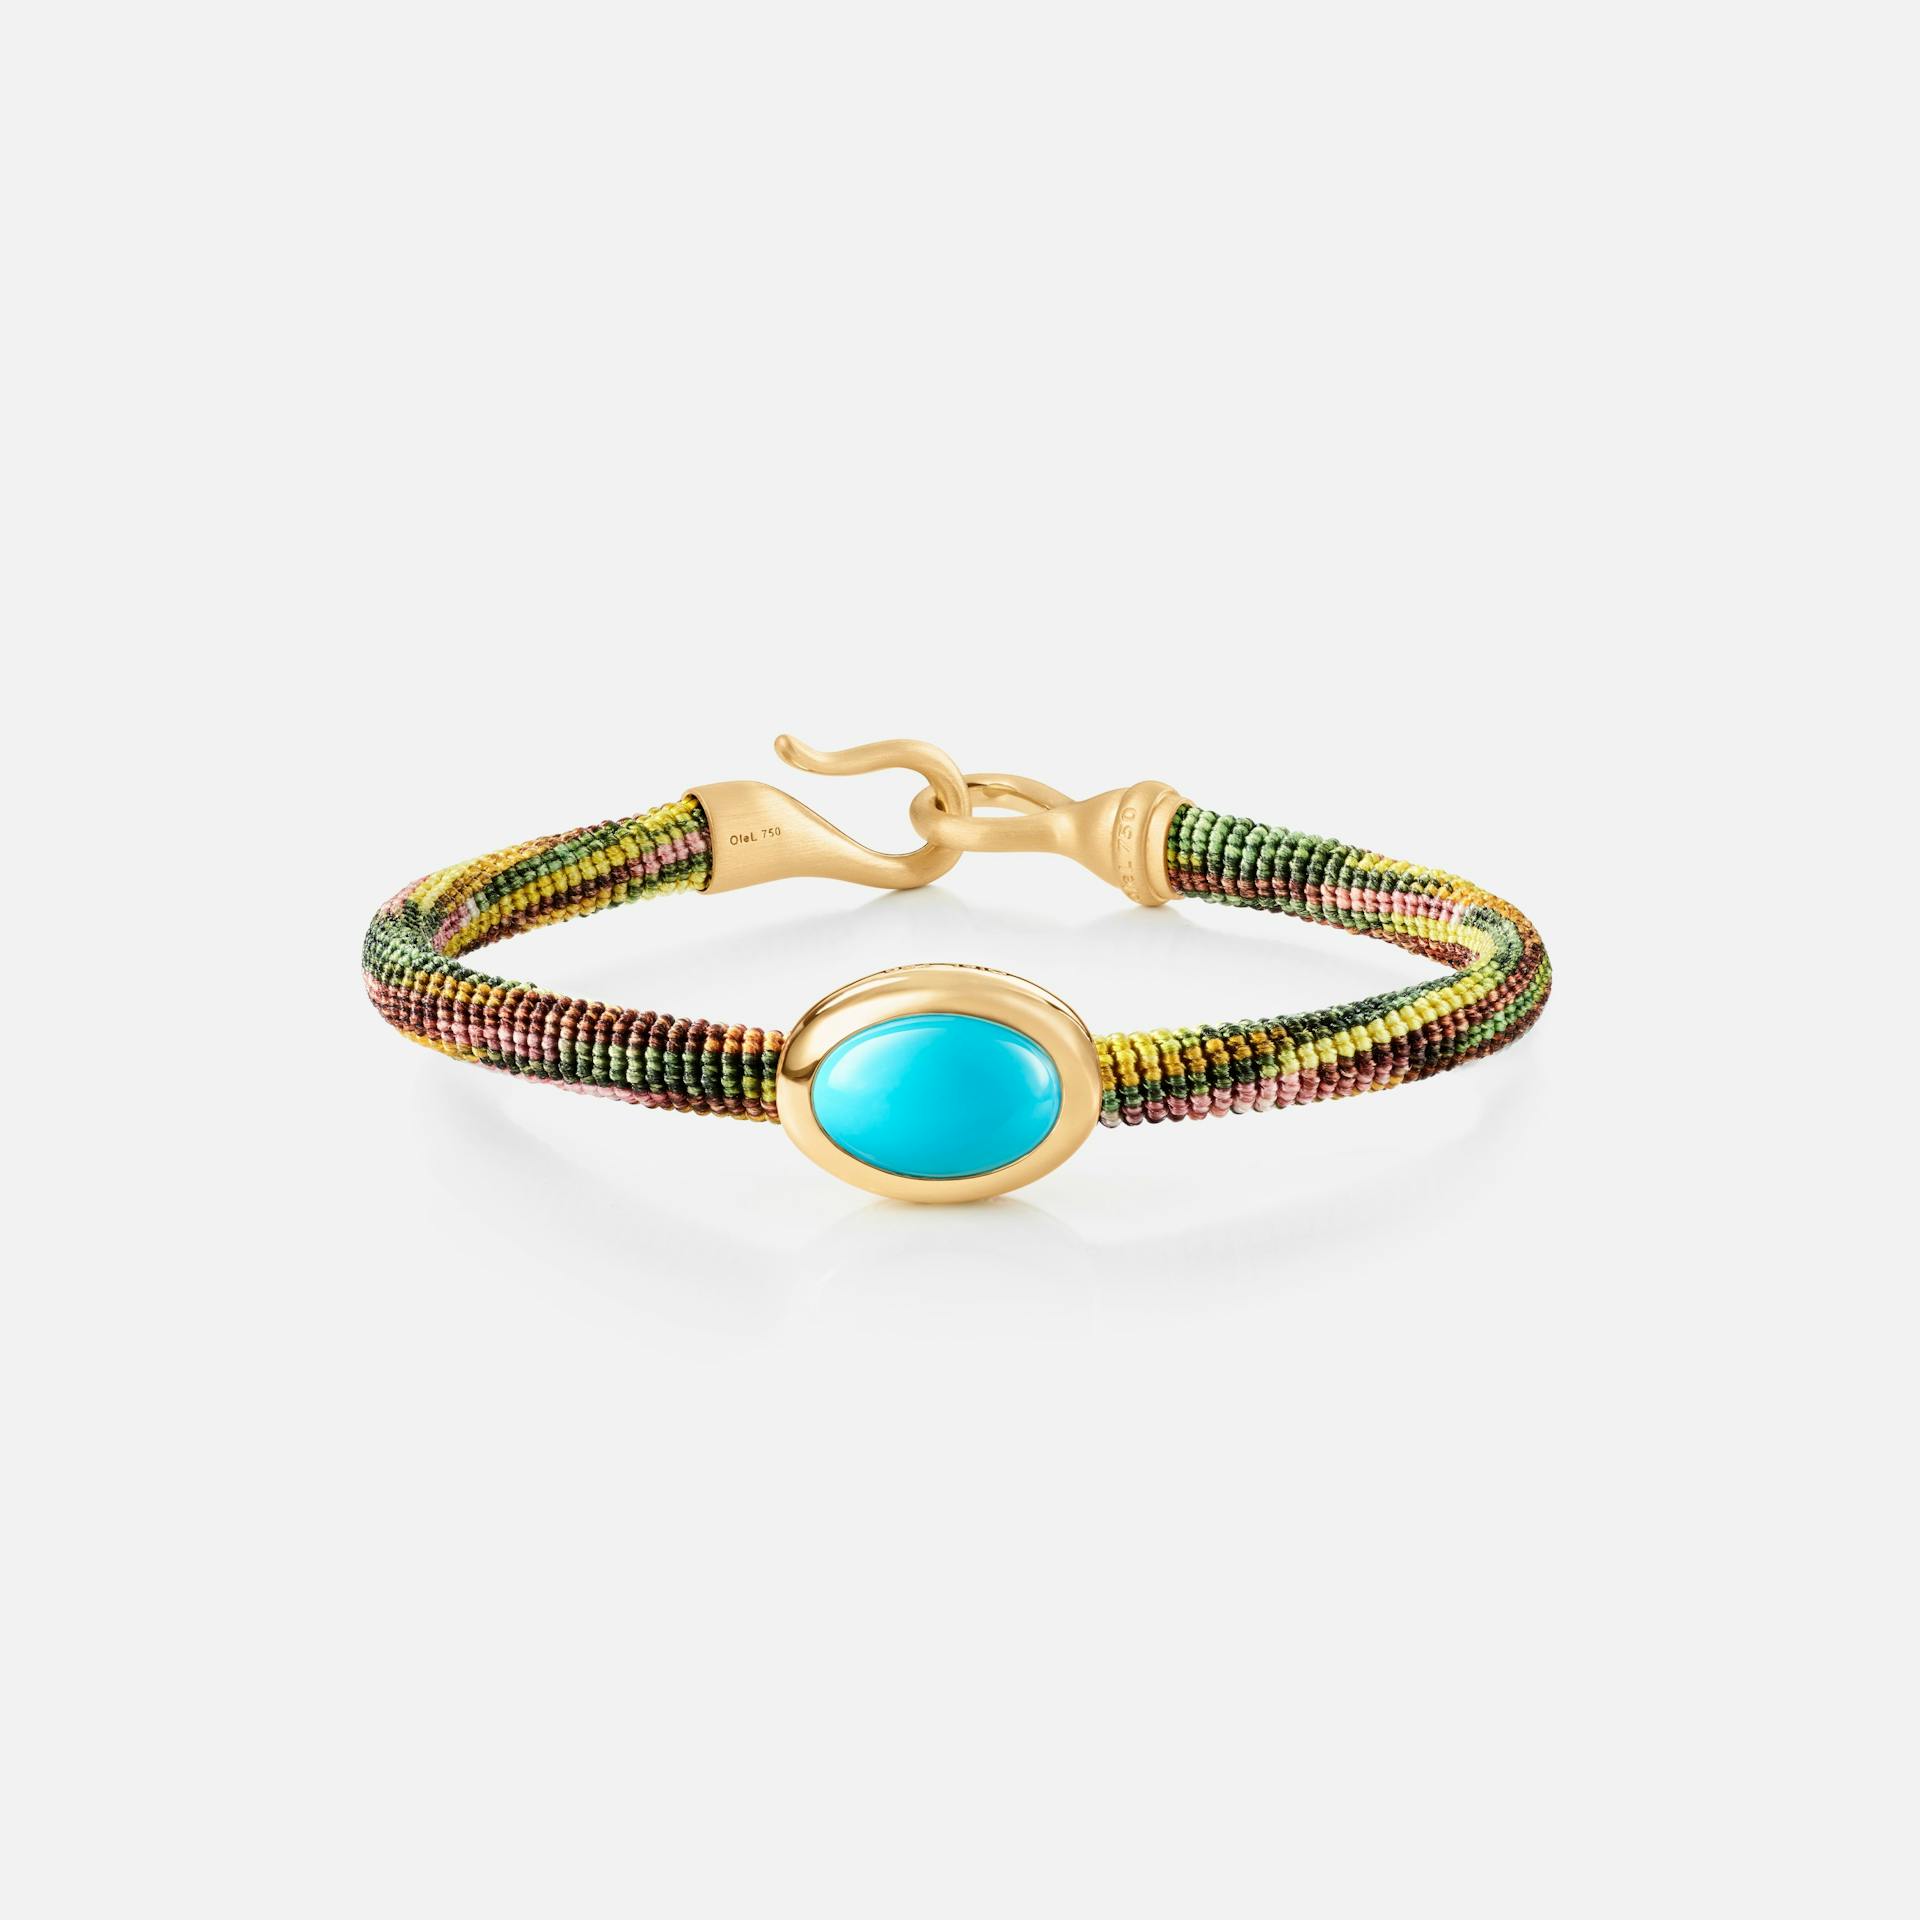 Life Bracelet with turquoise 6 mm 18k guld og turkis med Plum snor